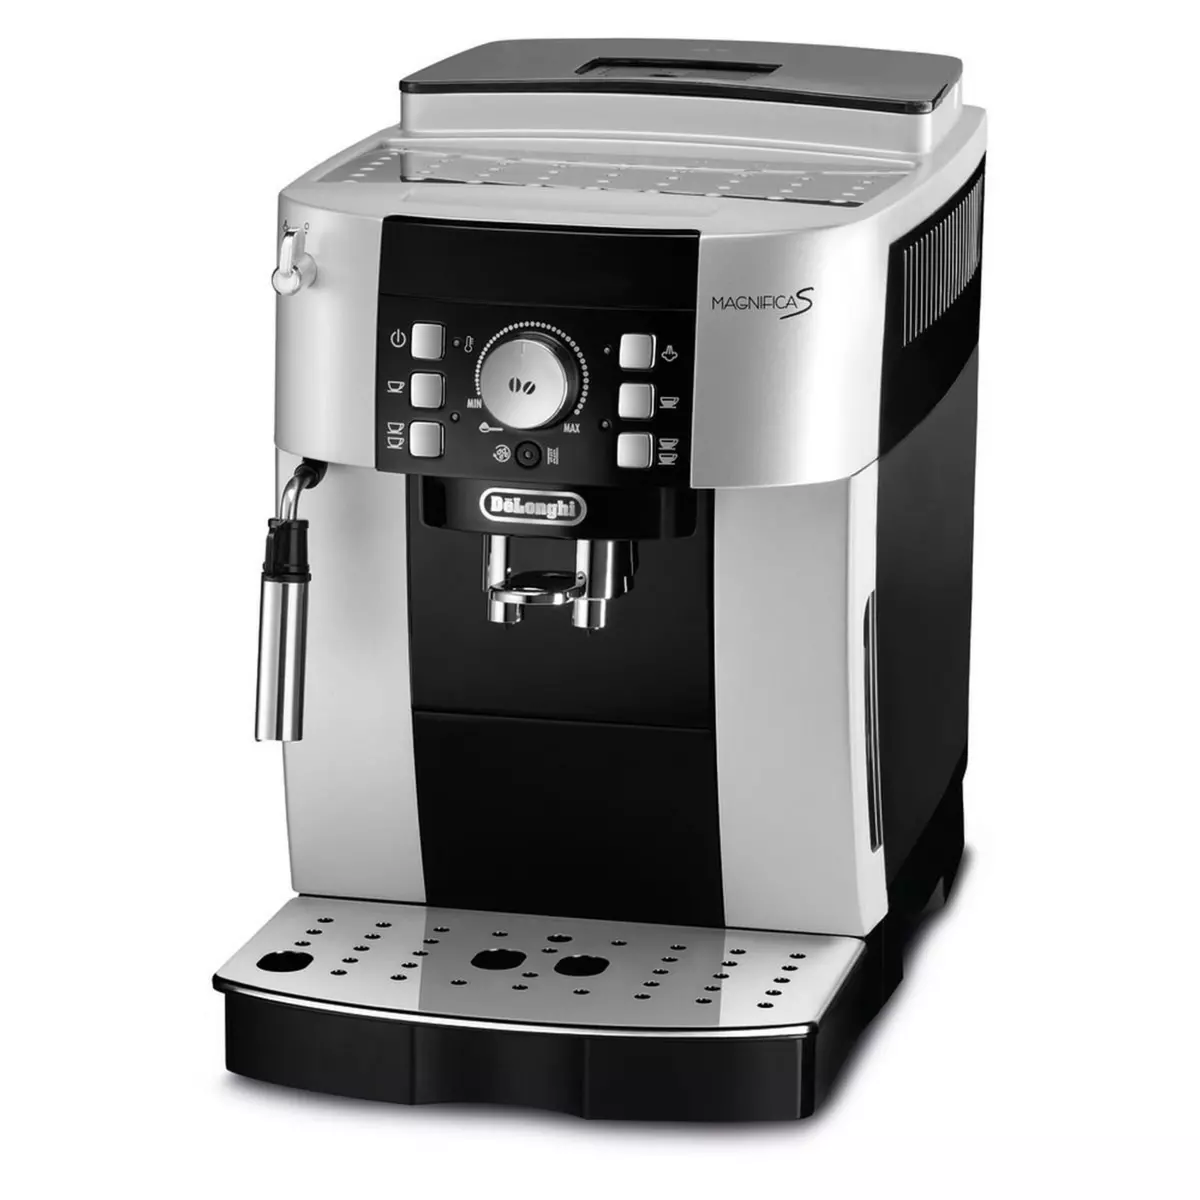 PHILIPS Machine à café expresso avec broyeur EP1220/00 - Noir pas